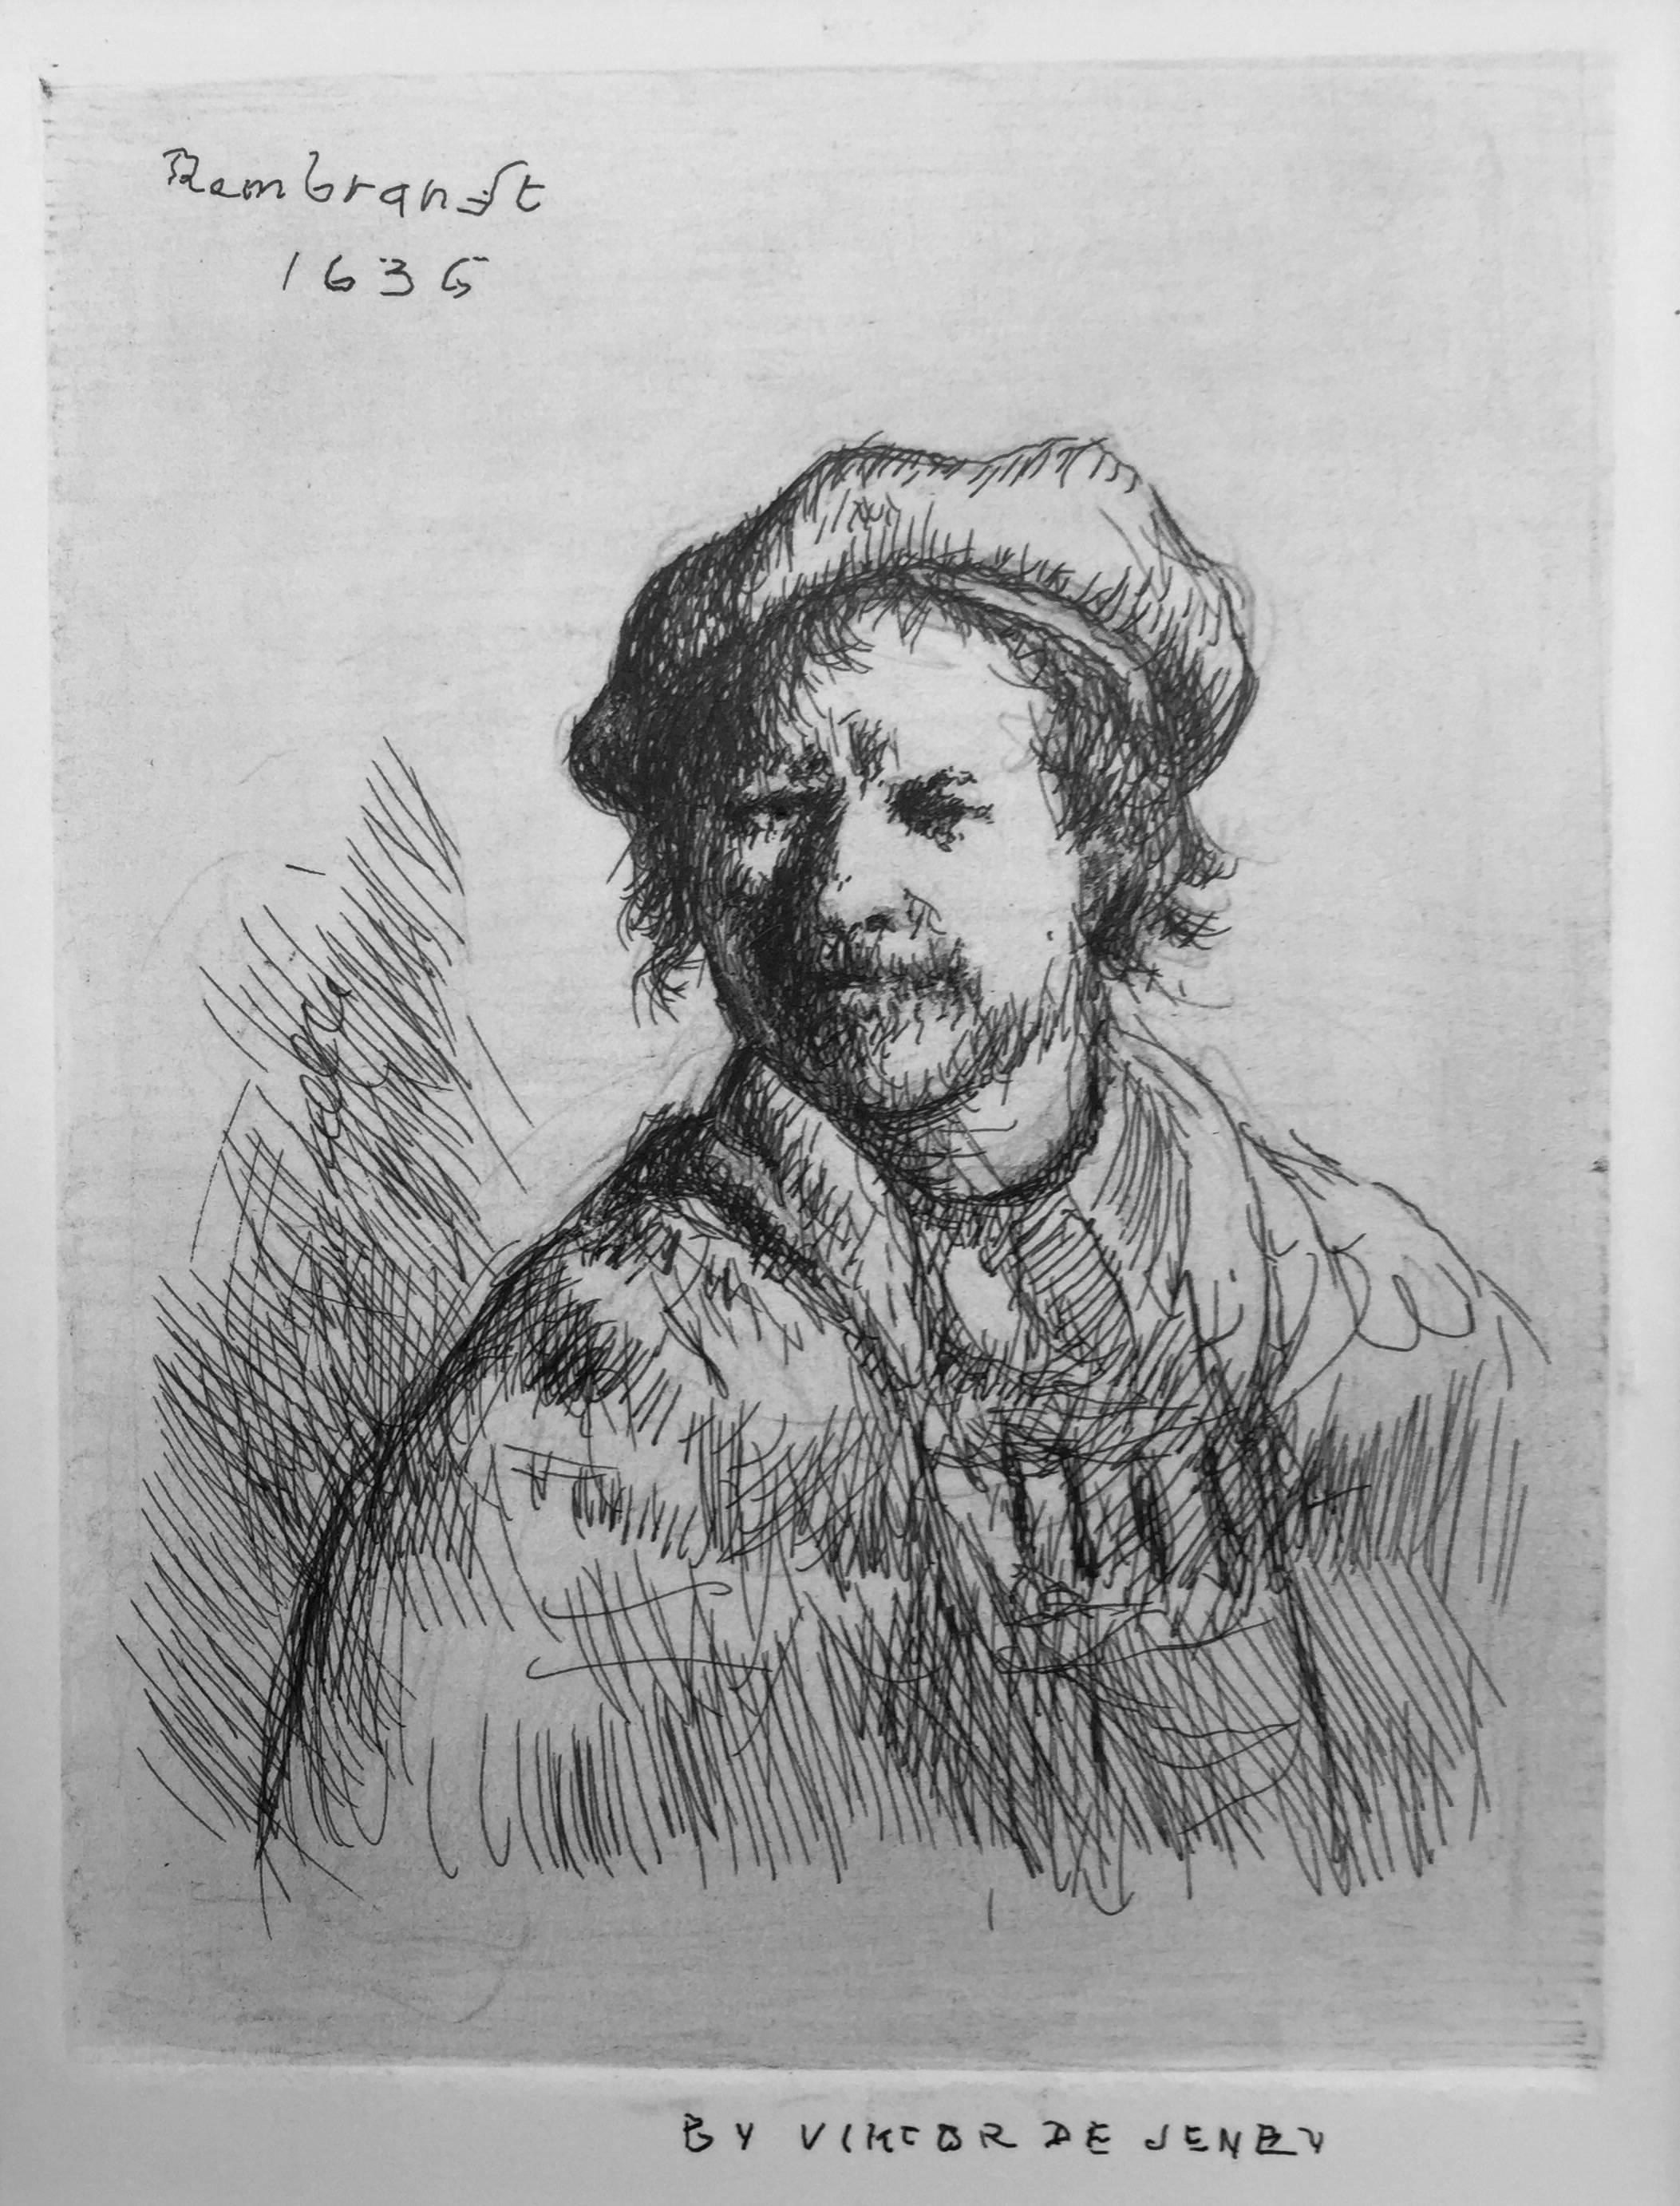 Viktor de Jeney Portrait Print - "Rembrandt Self Portrait, 1636"